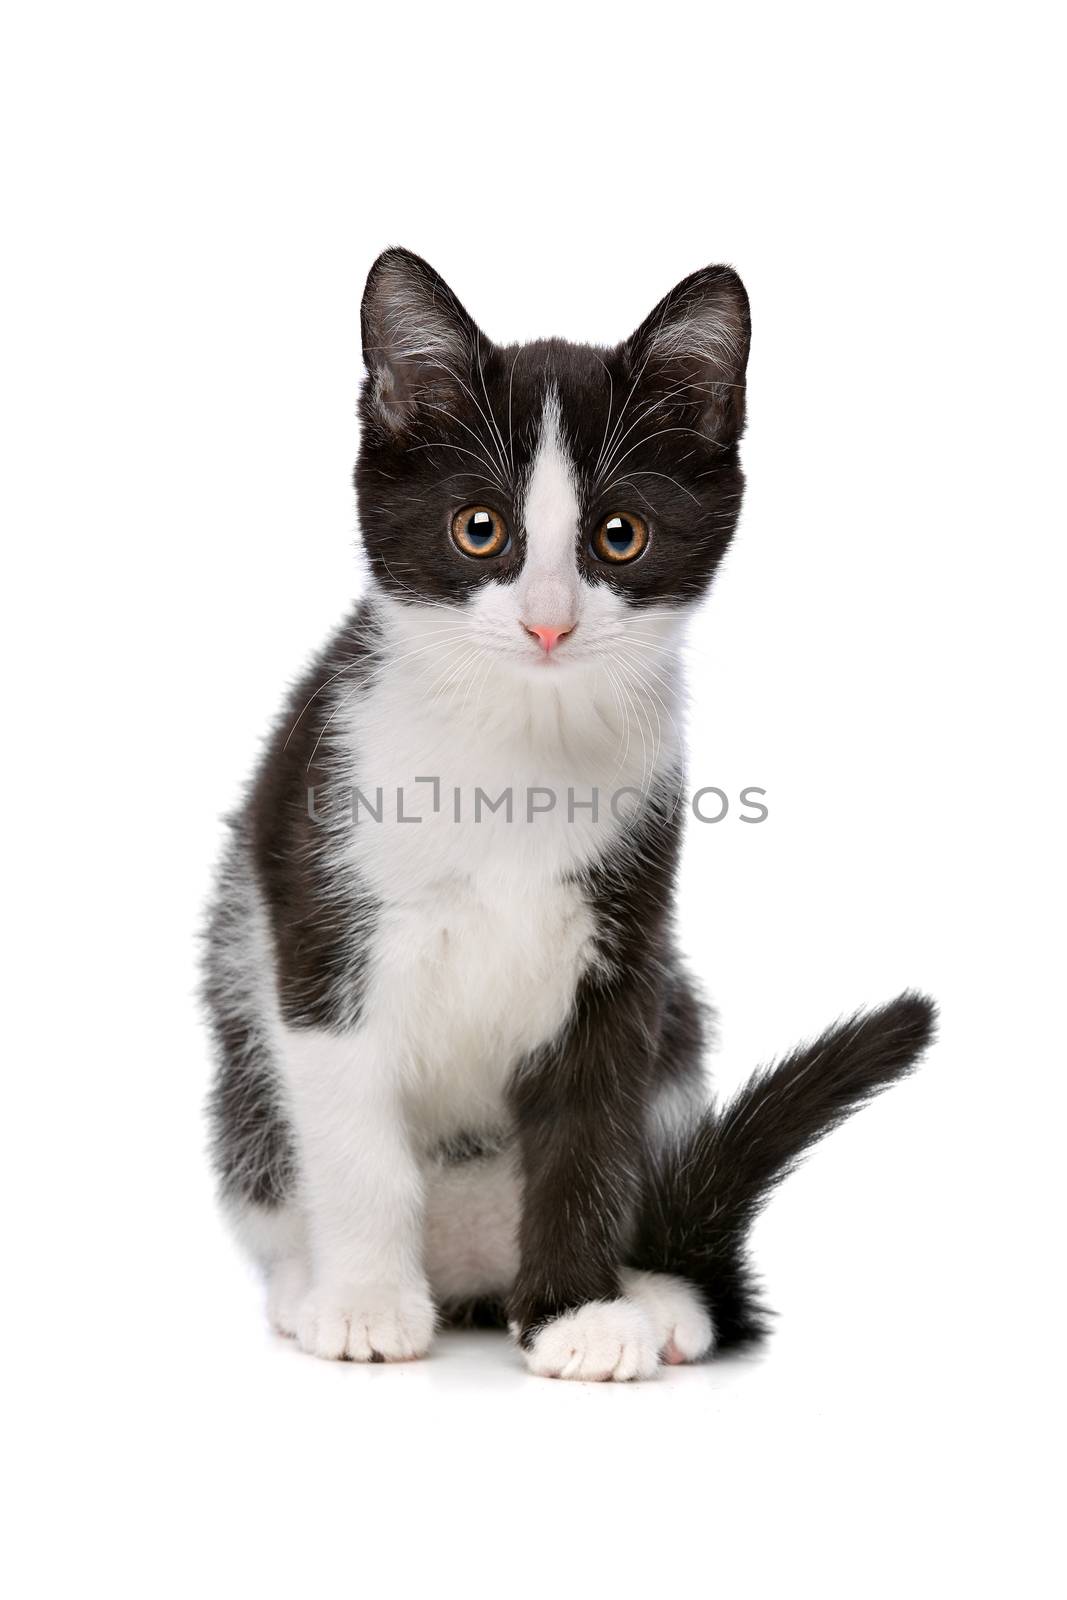 little black and white kitten by eriklam